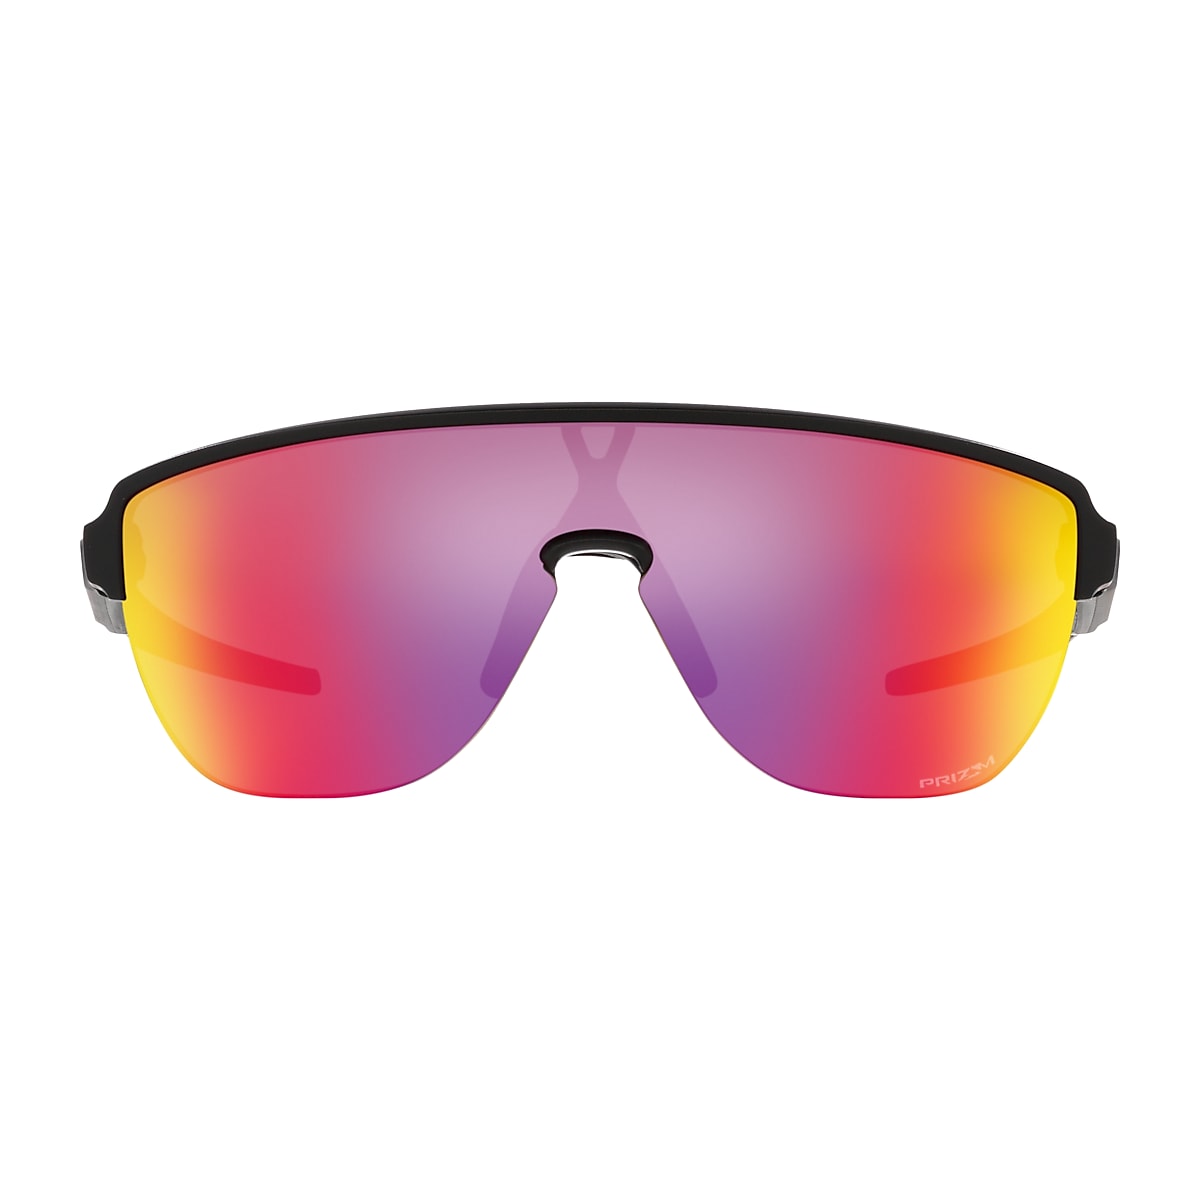 Corridor Lenses, Black Frame Sunglasses | Oakley®